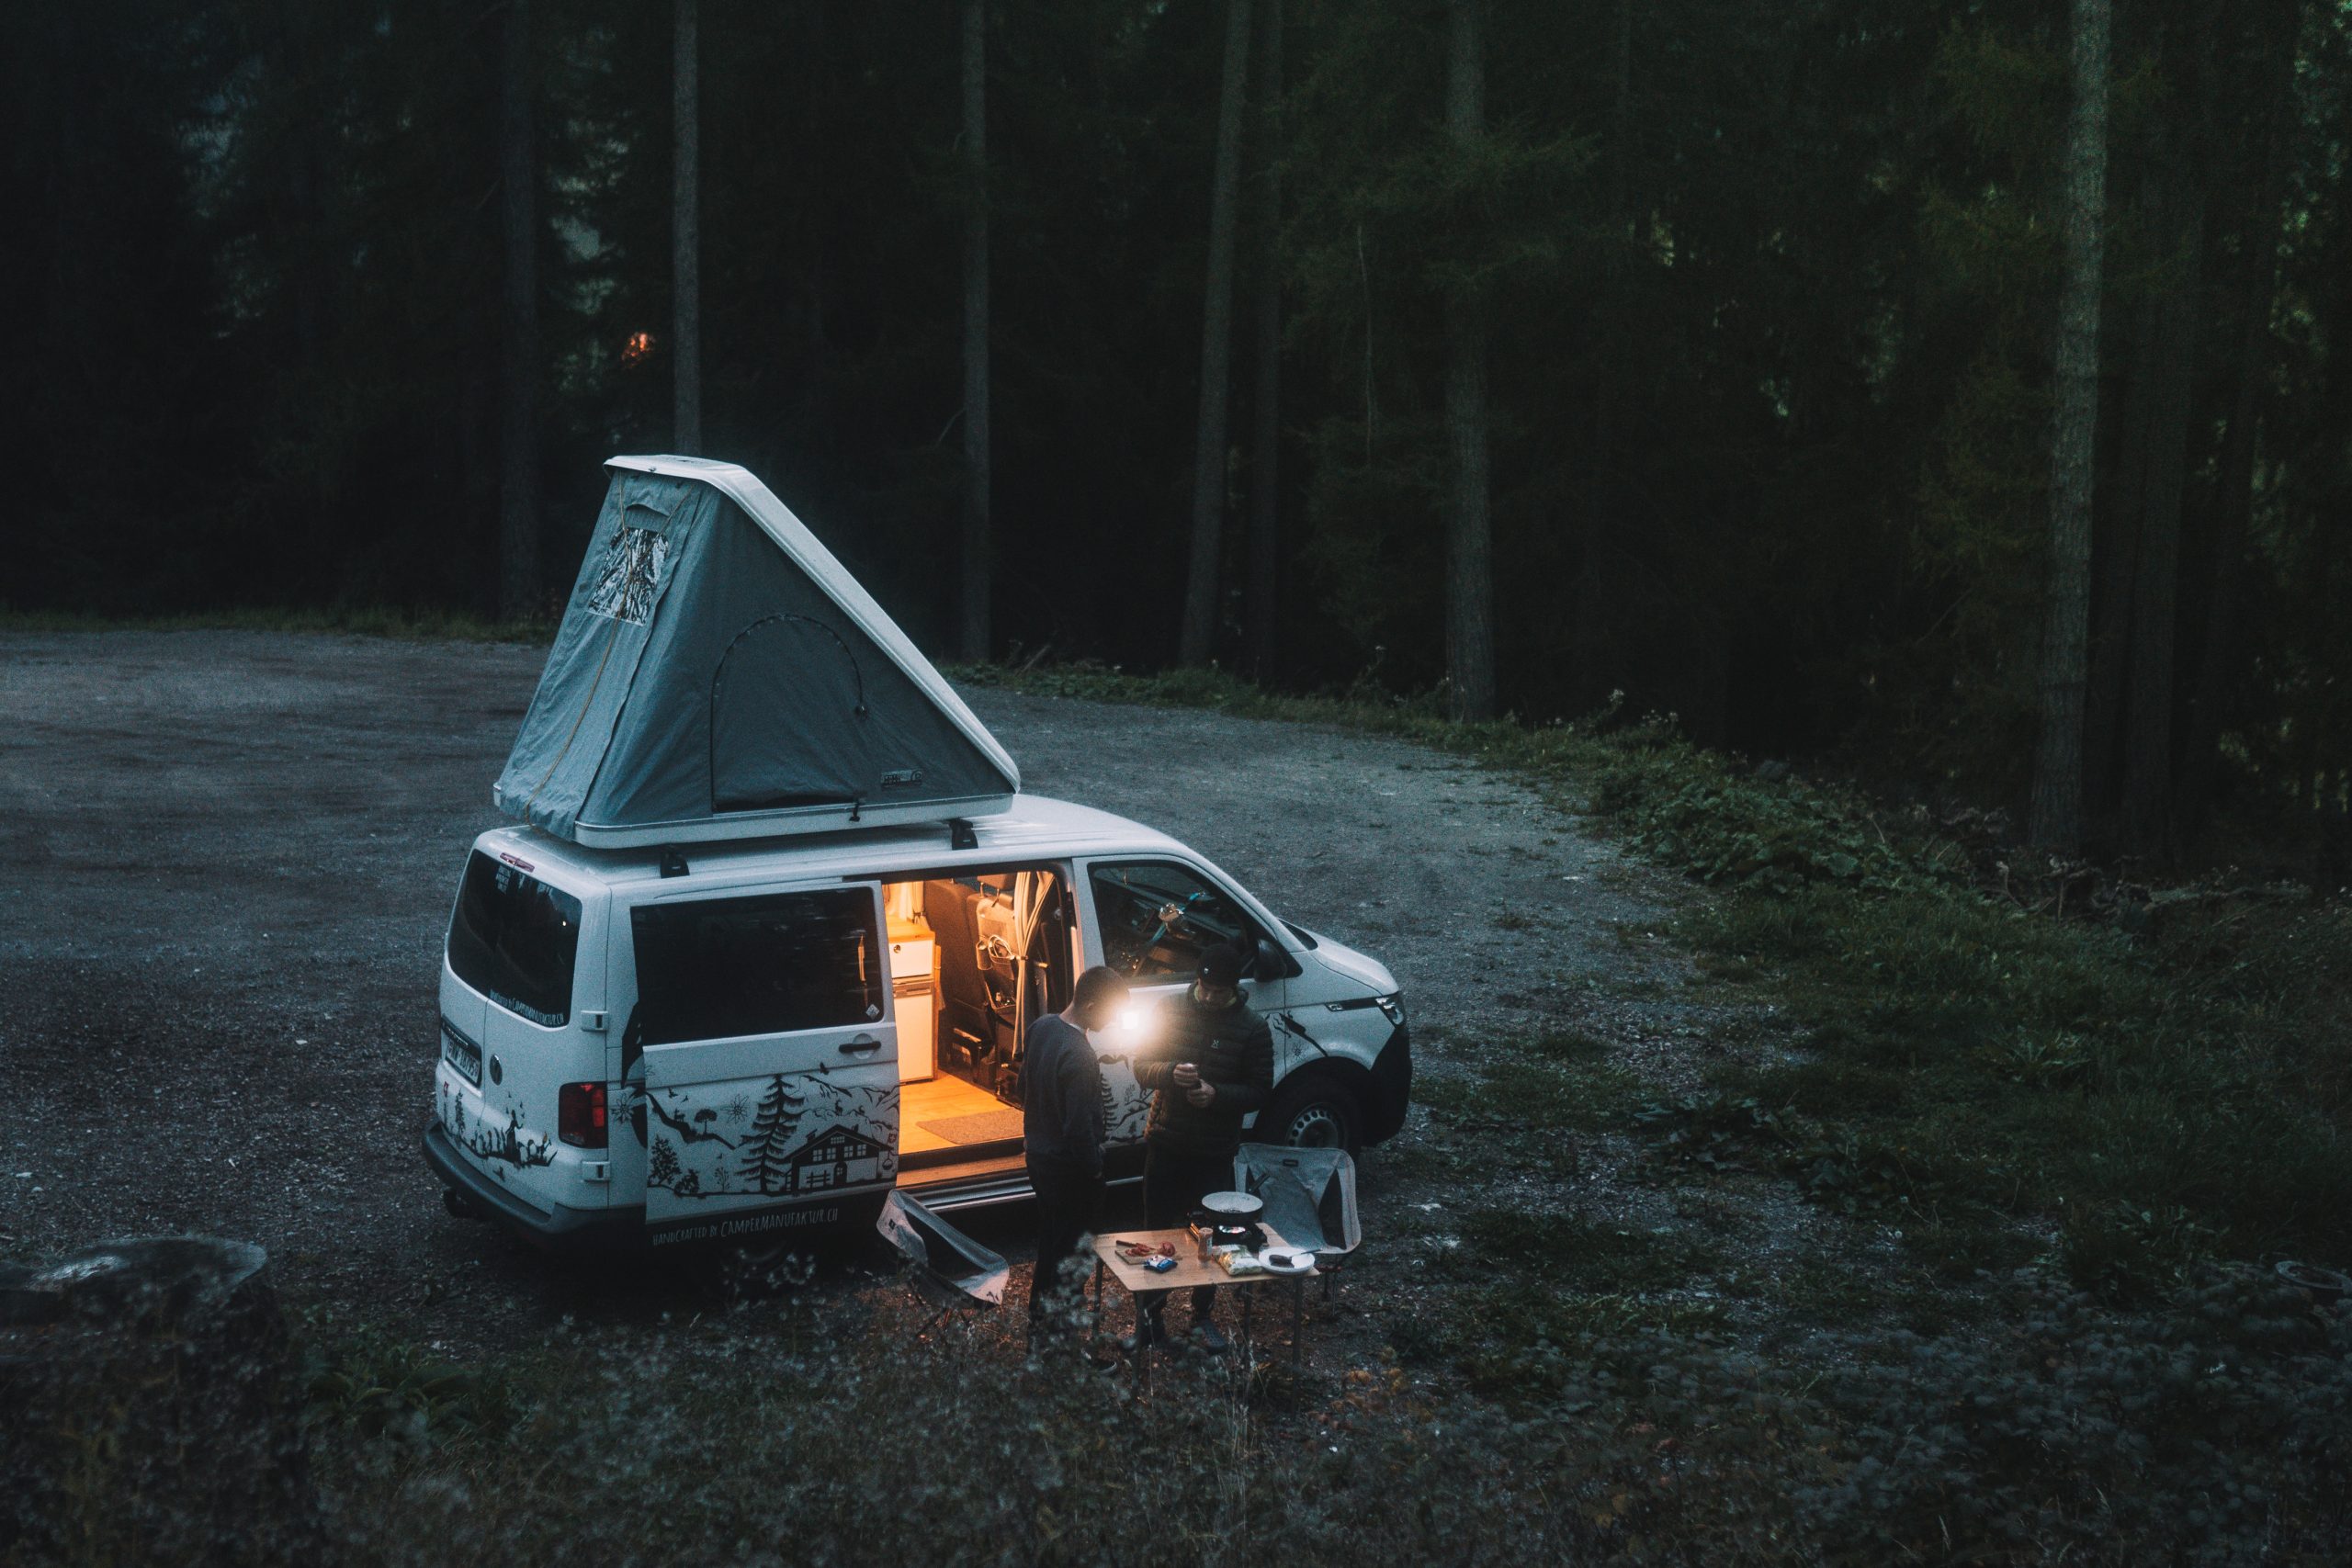 Chauffage dans le camping-car, pas seulement en hiver